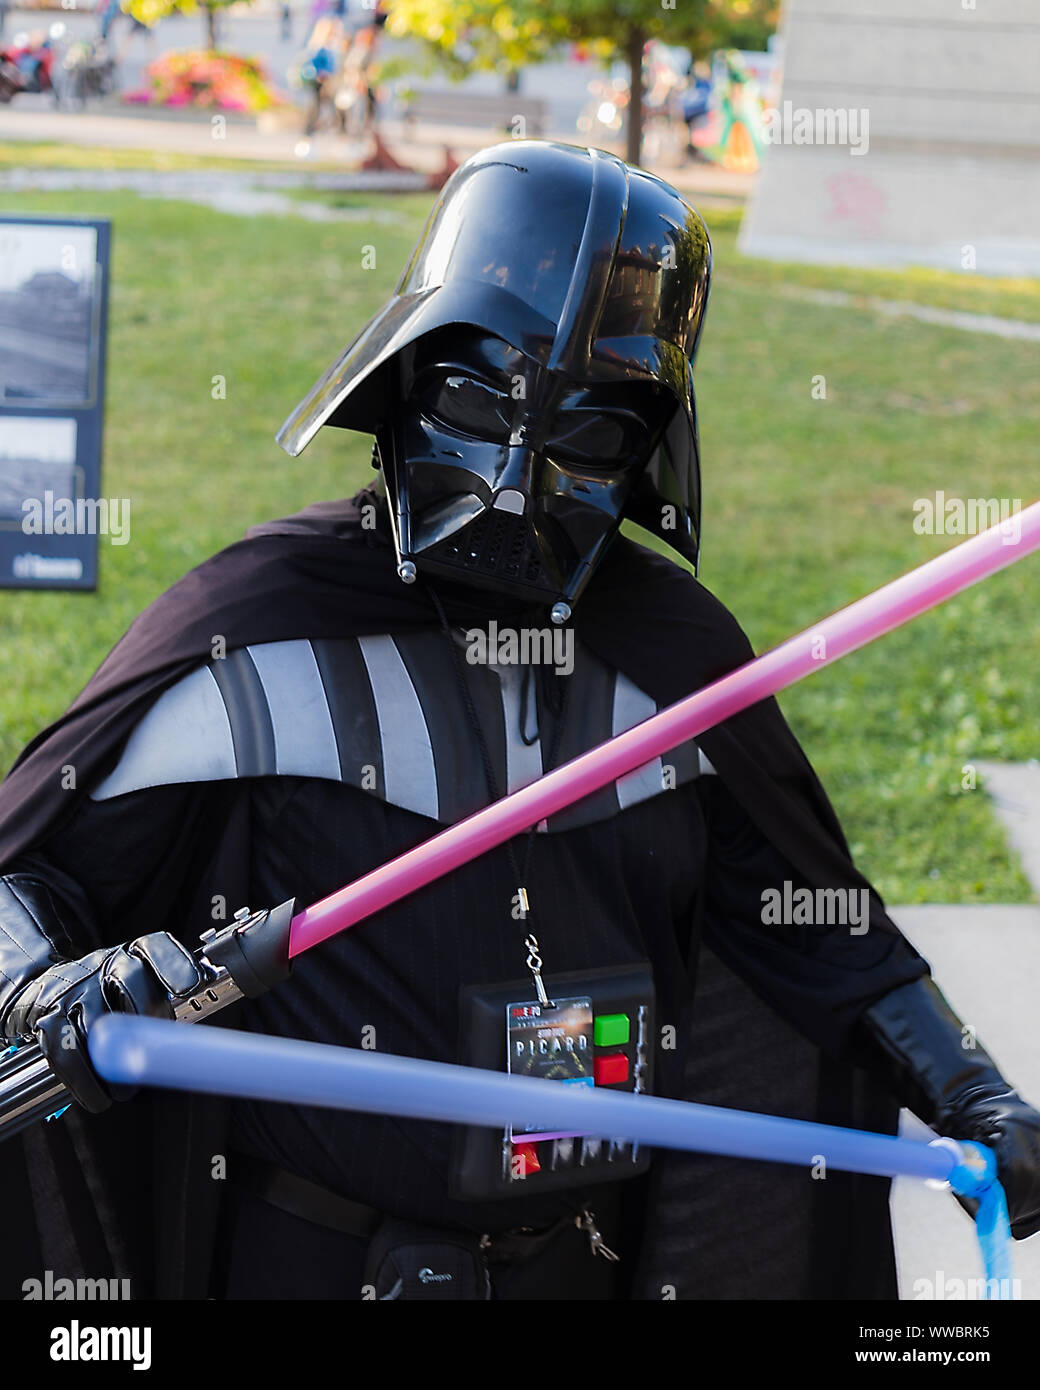 Ventilateur canadienne Expo présence habillé comme Dark Vador de Star Wars s'arrête et pose pour une photo dans le parc Roundhouse. Banque D'Images